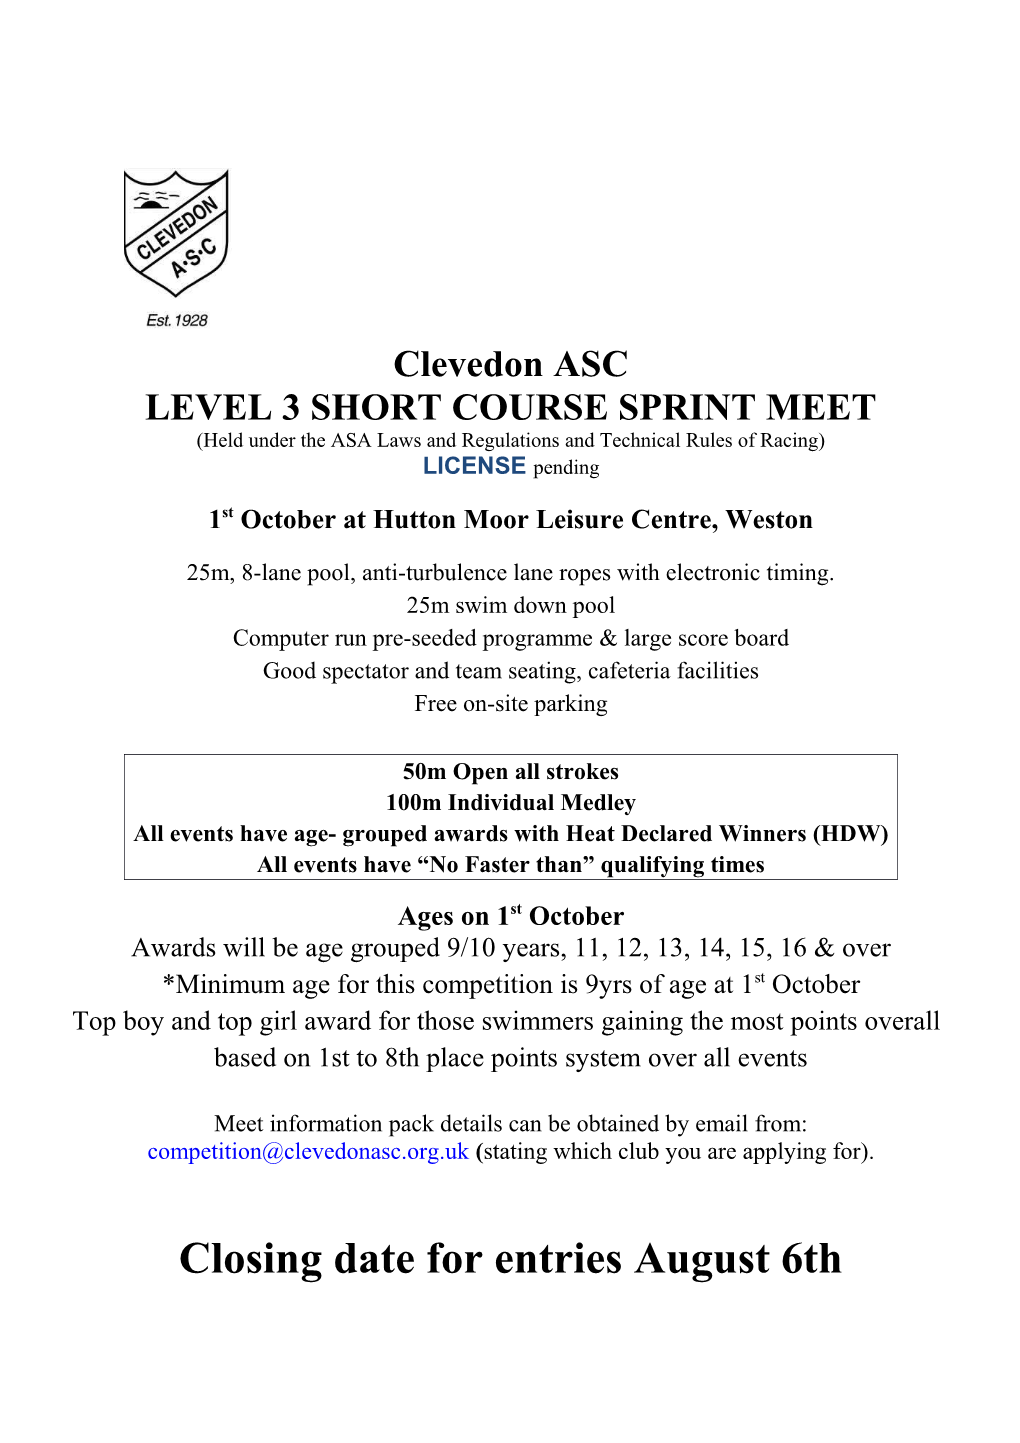 Level 3 Short Course Sprint Meet